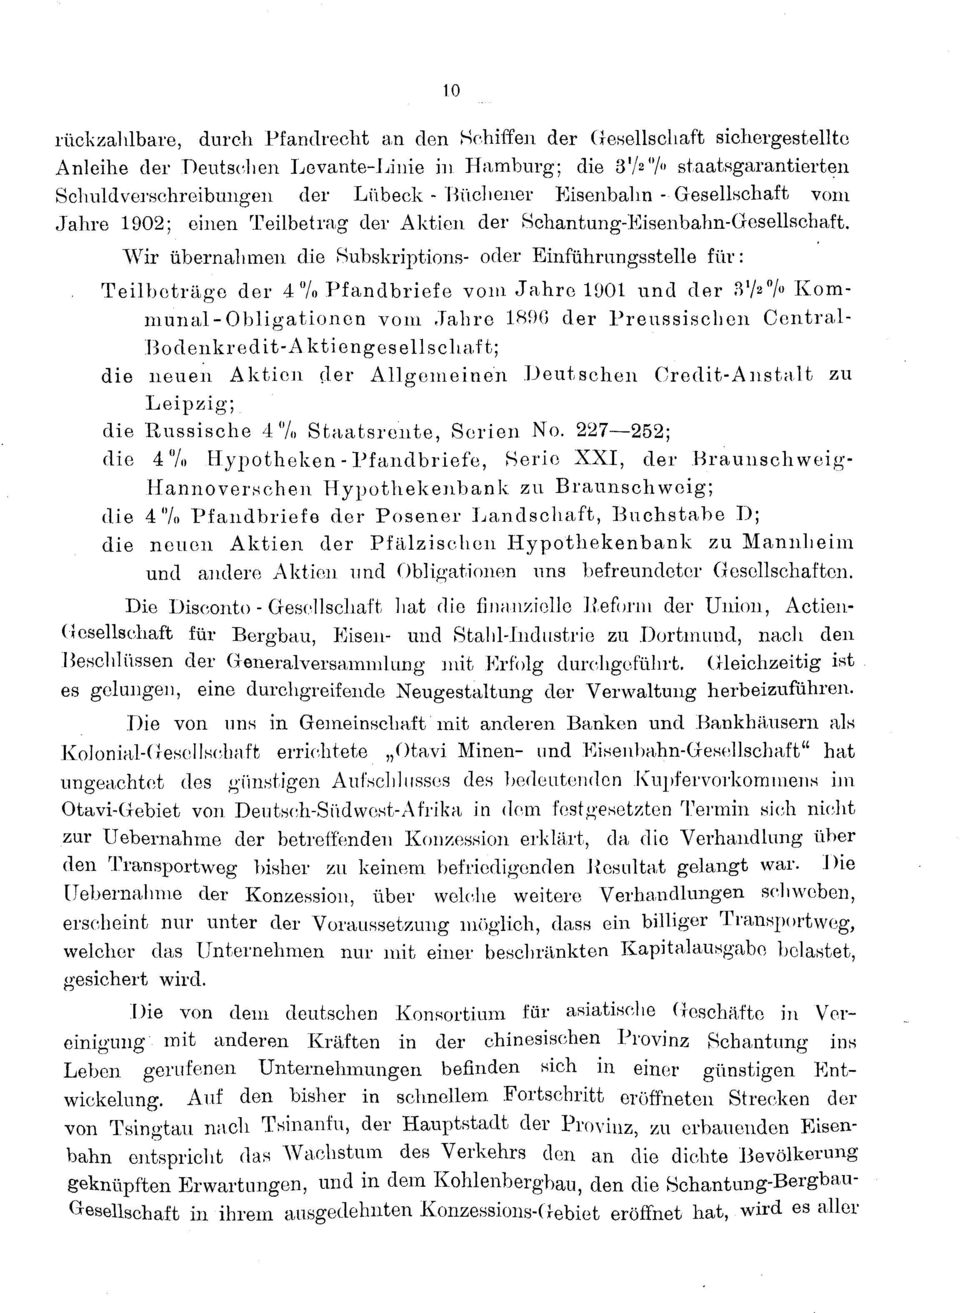 Wir übernahmen die Subskriptions- oder Einführungsstelle für: Teilbeträge der 4% Pfandbriefe vom Jahre 1001 und der 37 2 7» Kommunal-Obligationen vom Jahre 1890 der Preussischen Central- Bodenkr